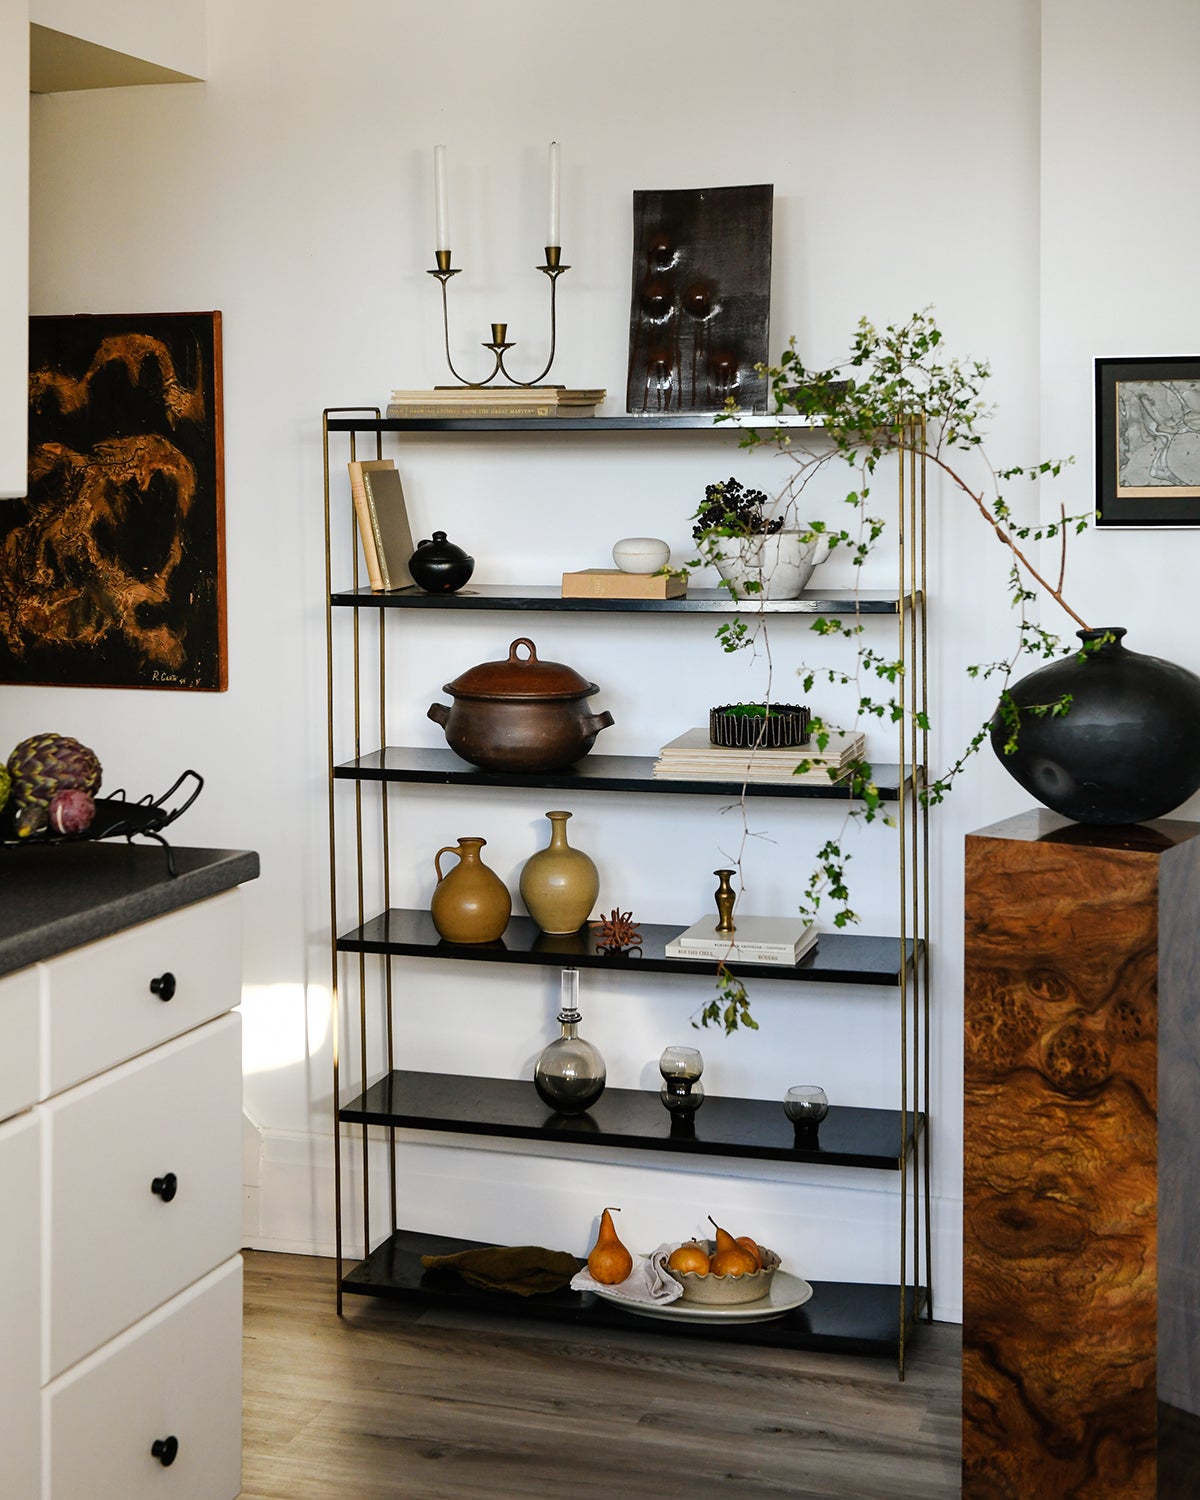 Kitchen bookshelf with found objects